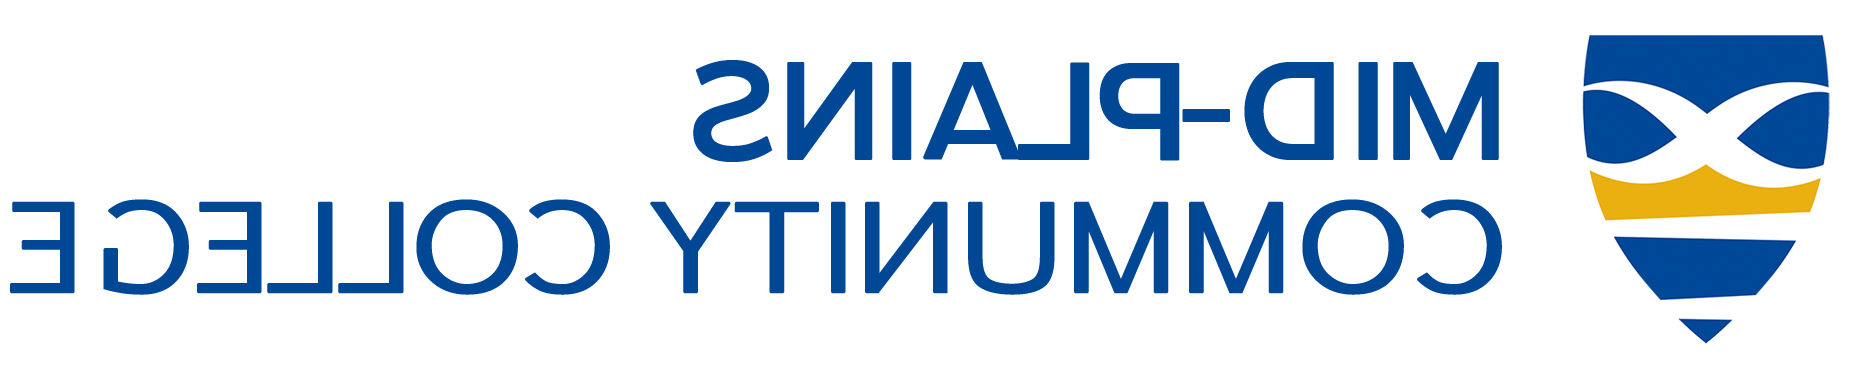 MPCC logo